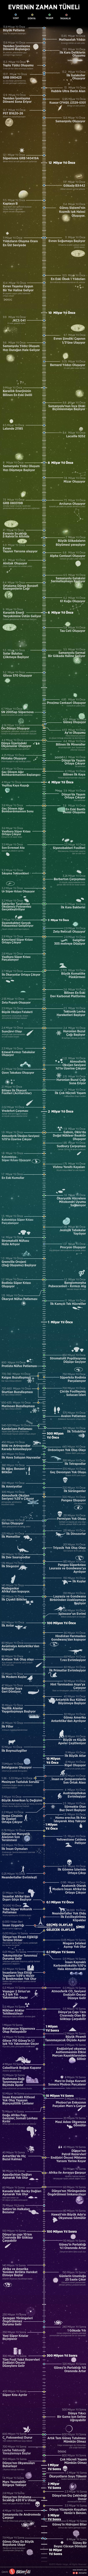 evrenin-zaman-tuneli-infografik-bilimfilicom.jpg